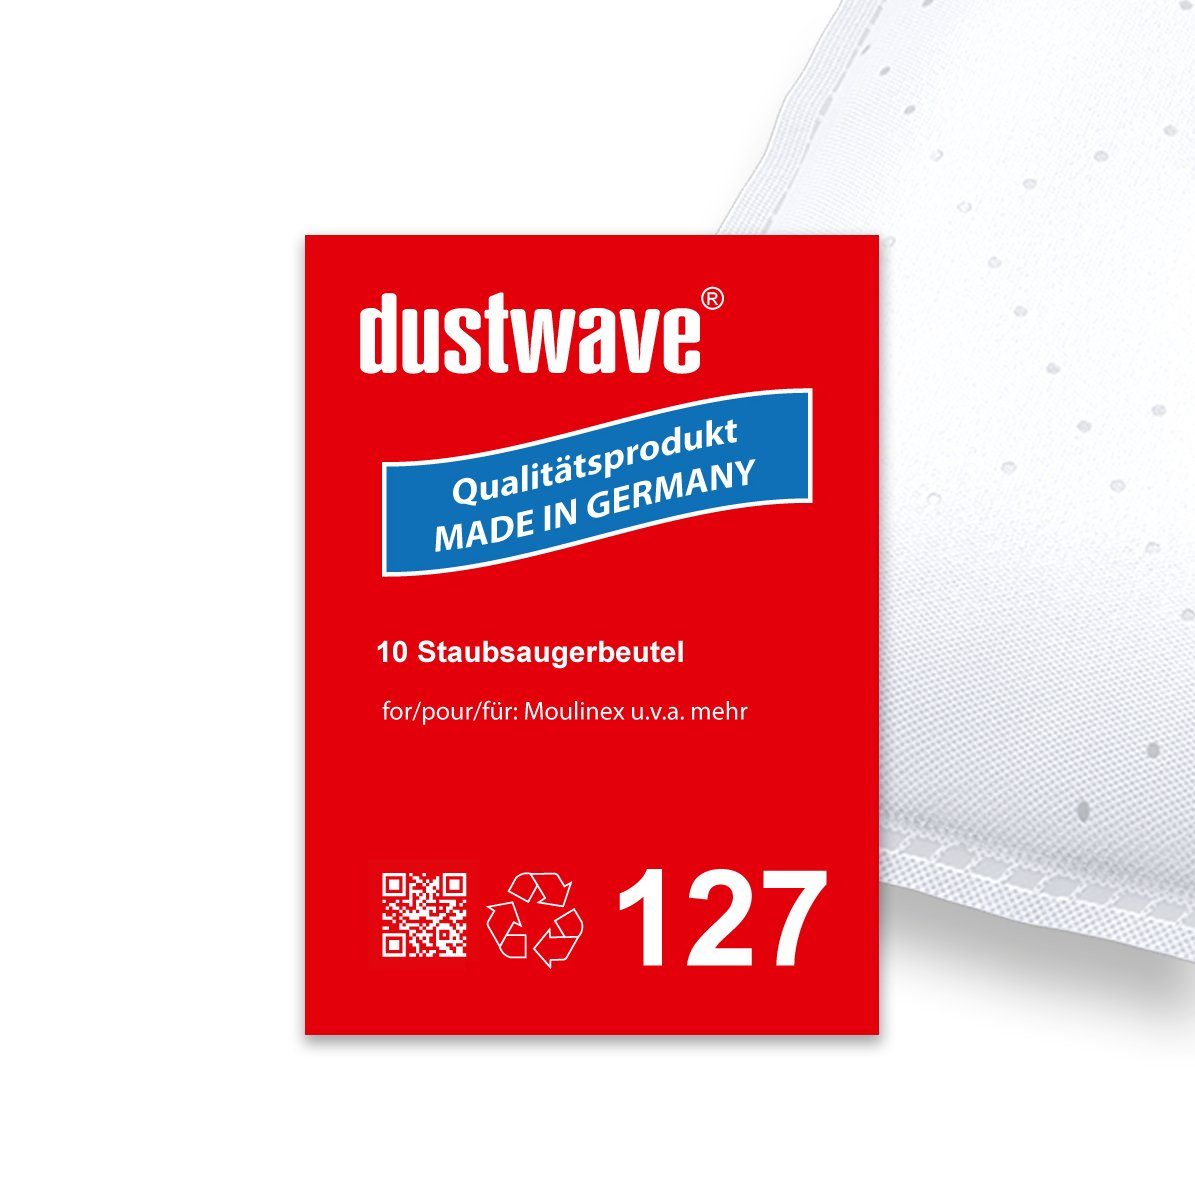 Dustwave Staubsaugerbeutel Sparpack, passend für Baur Versand - 340927, 10 St., Sparpack, 10 Staubsaugerbeutel + 1 Hepa-Filter (ca. 15x15cm - zuschneidbar)